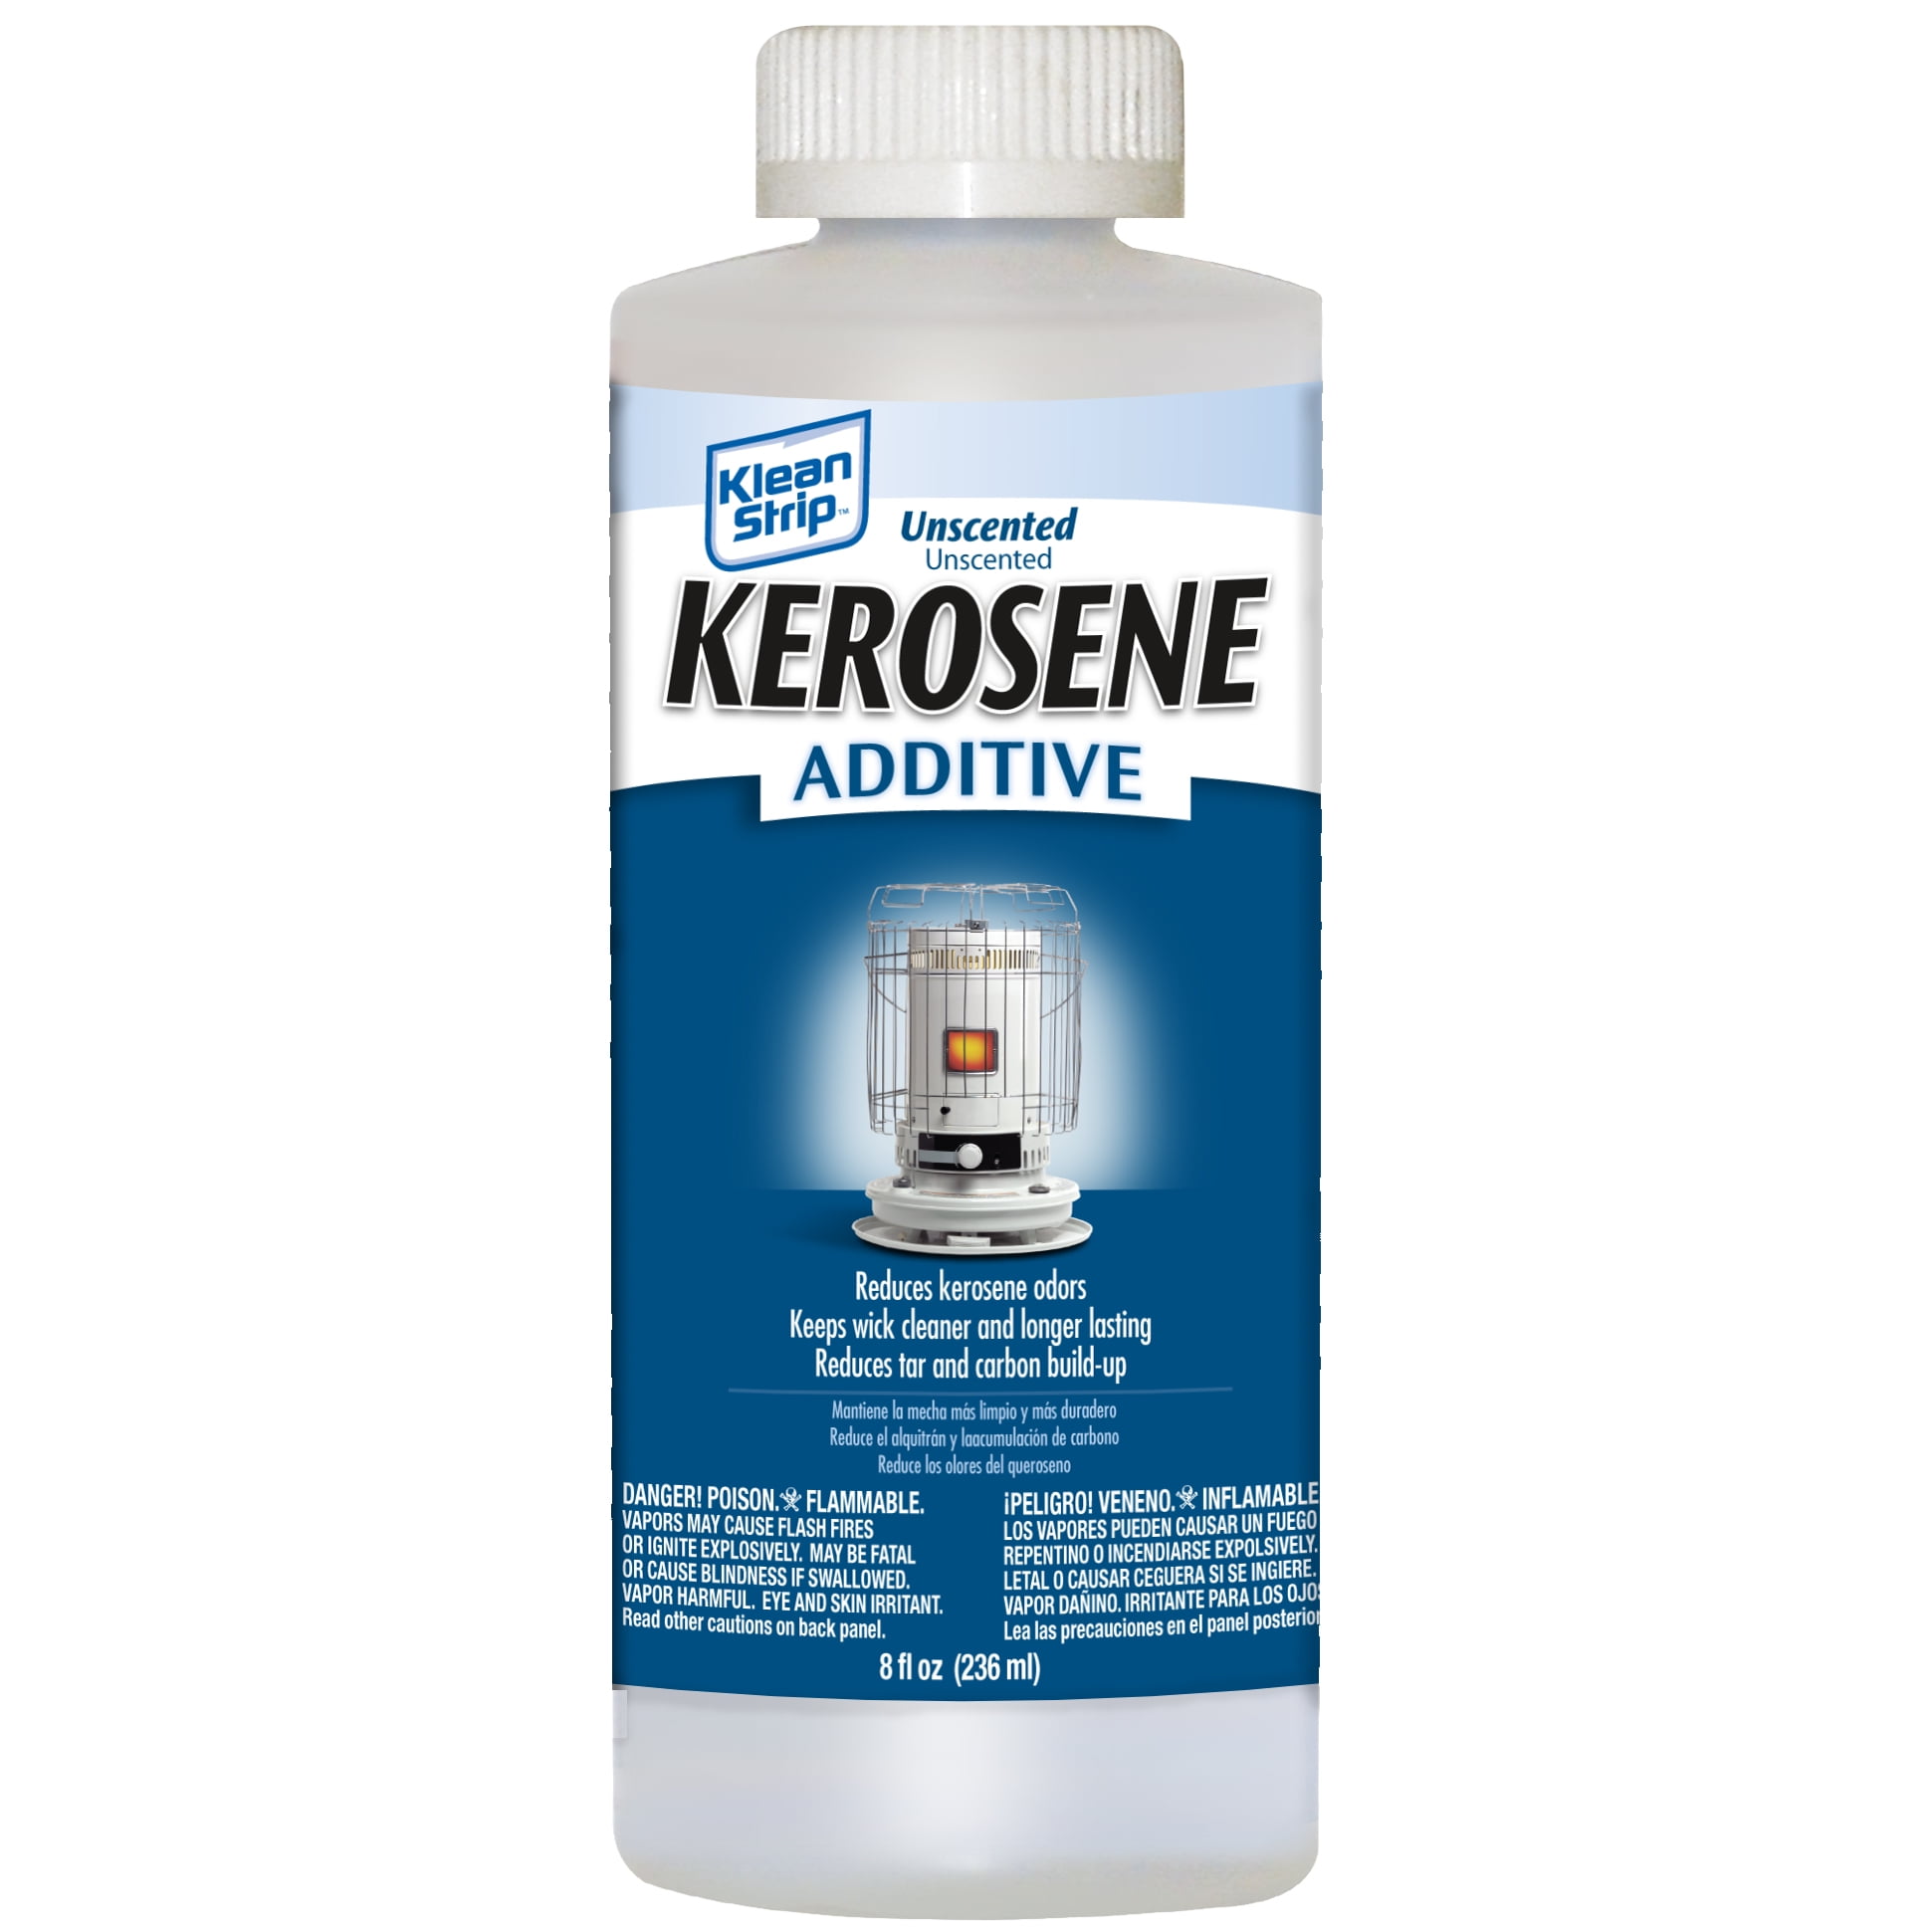 Kerosene crystal текст. Kerosene. Clarity in Kerosene.